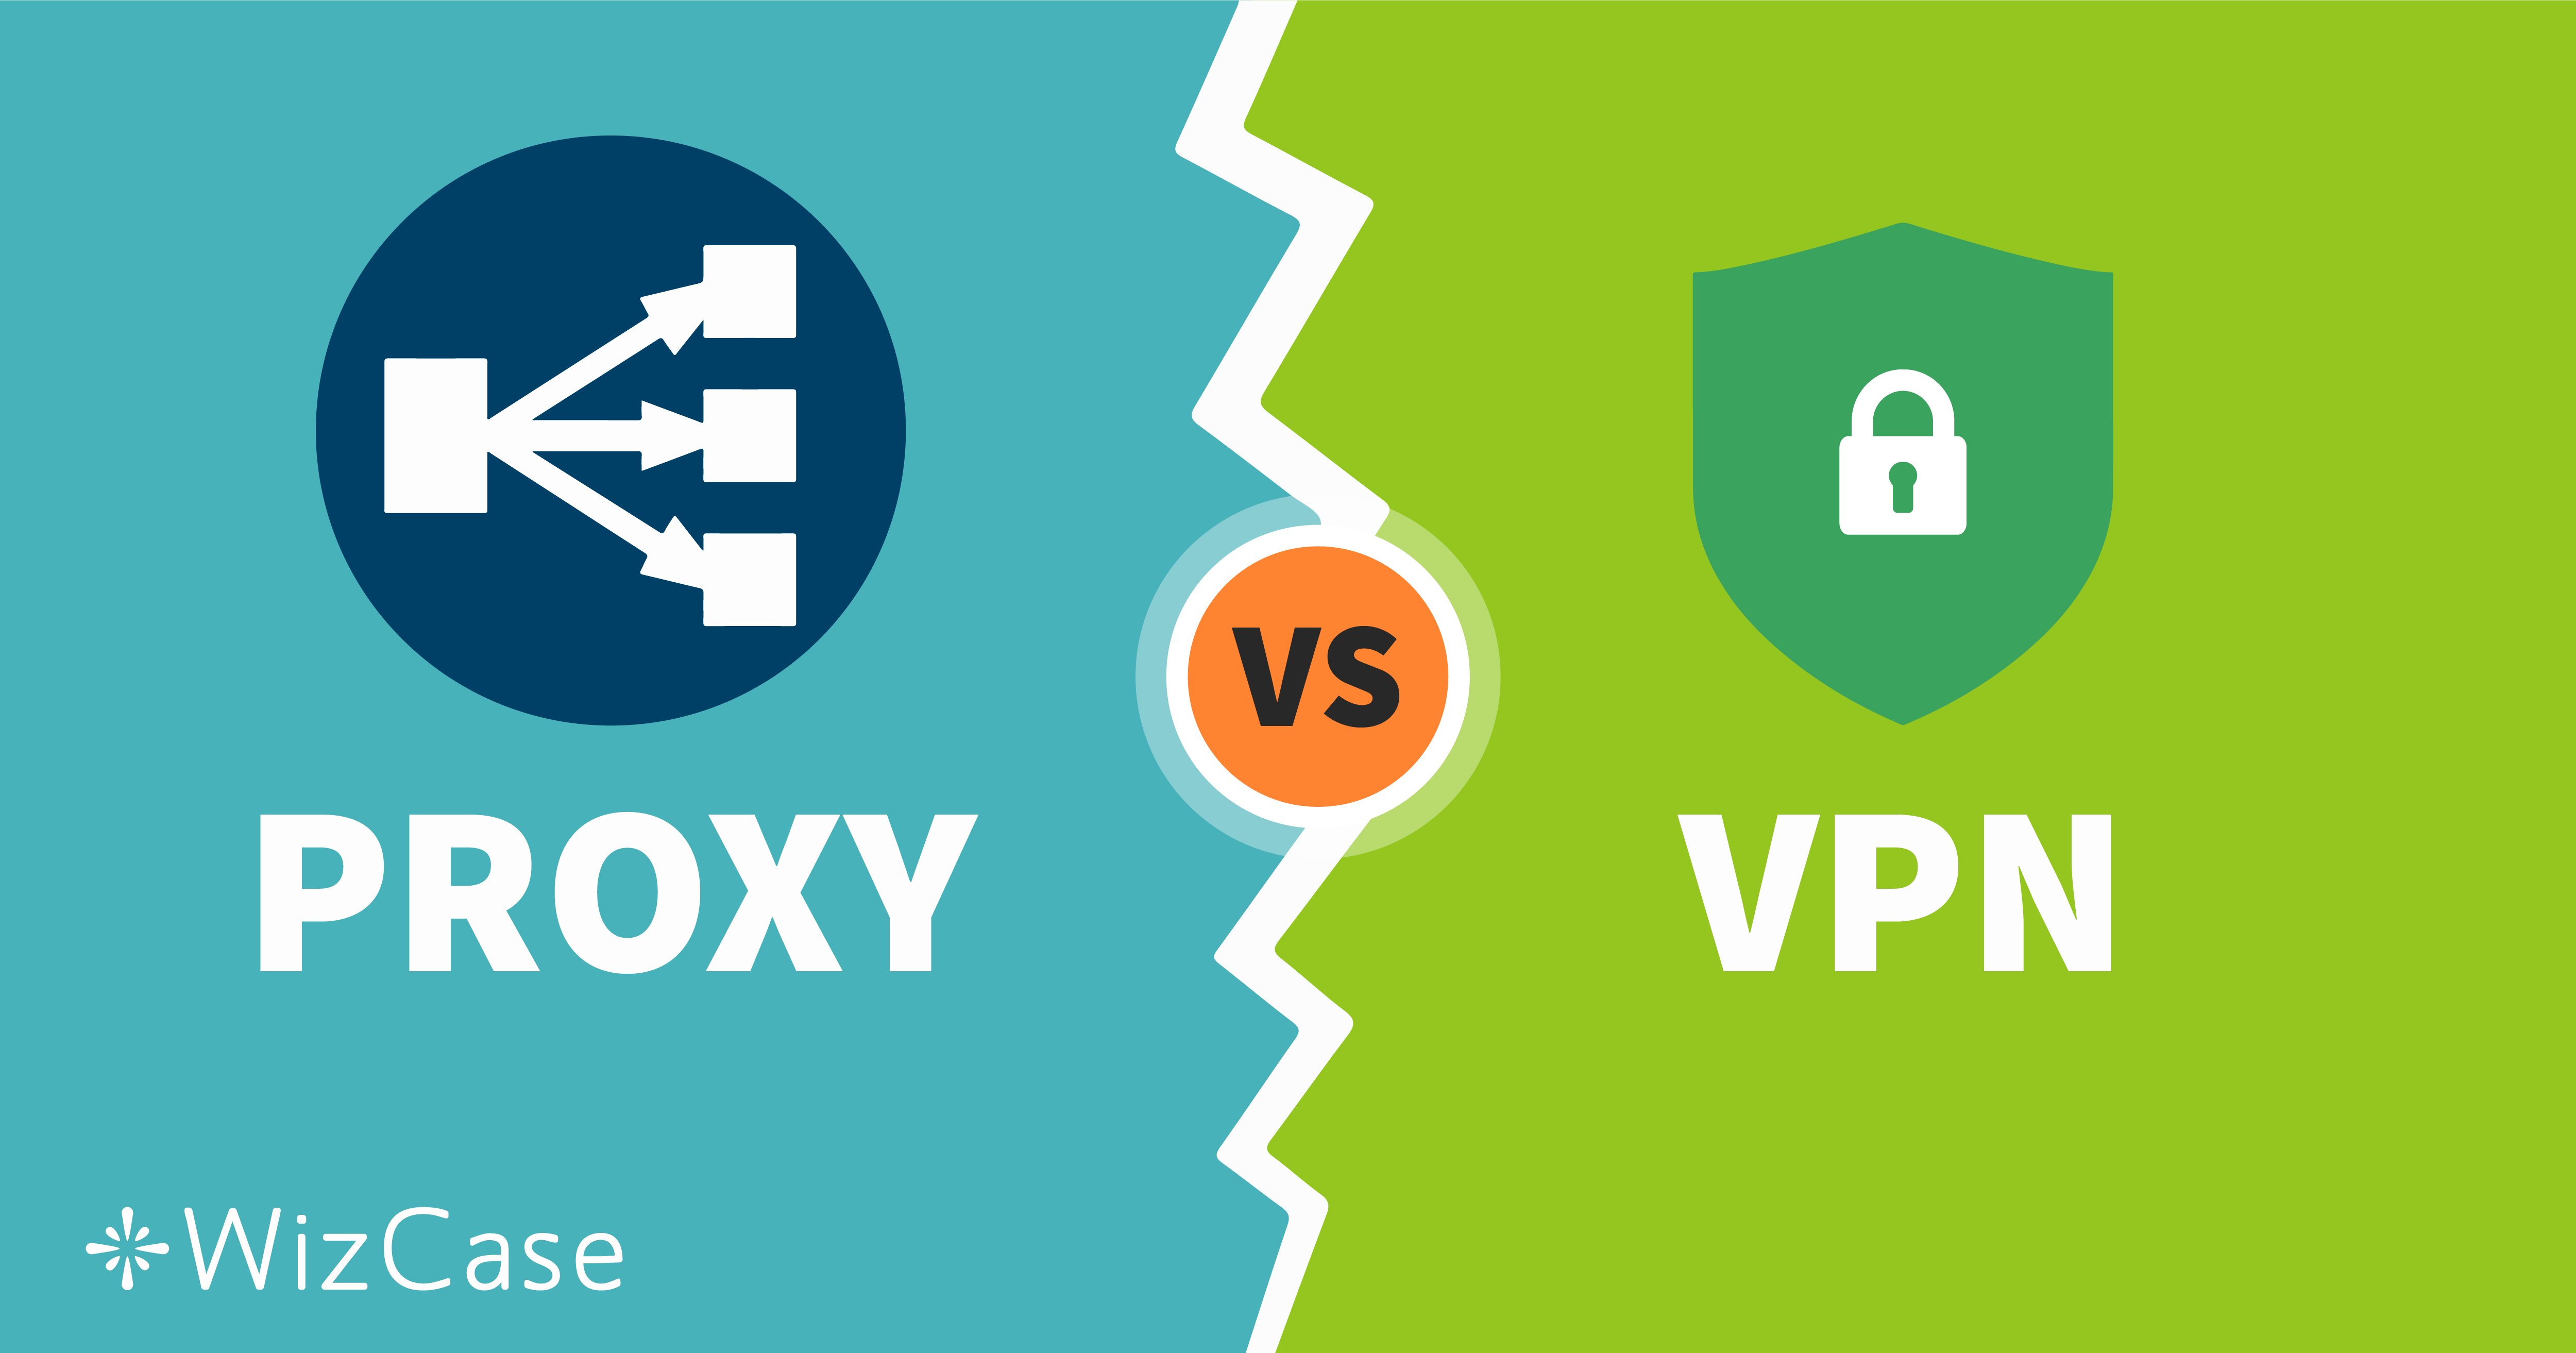 O que é mais seguro VPN ou proxy?